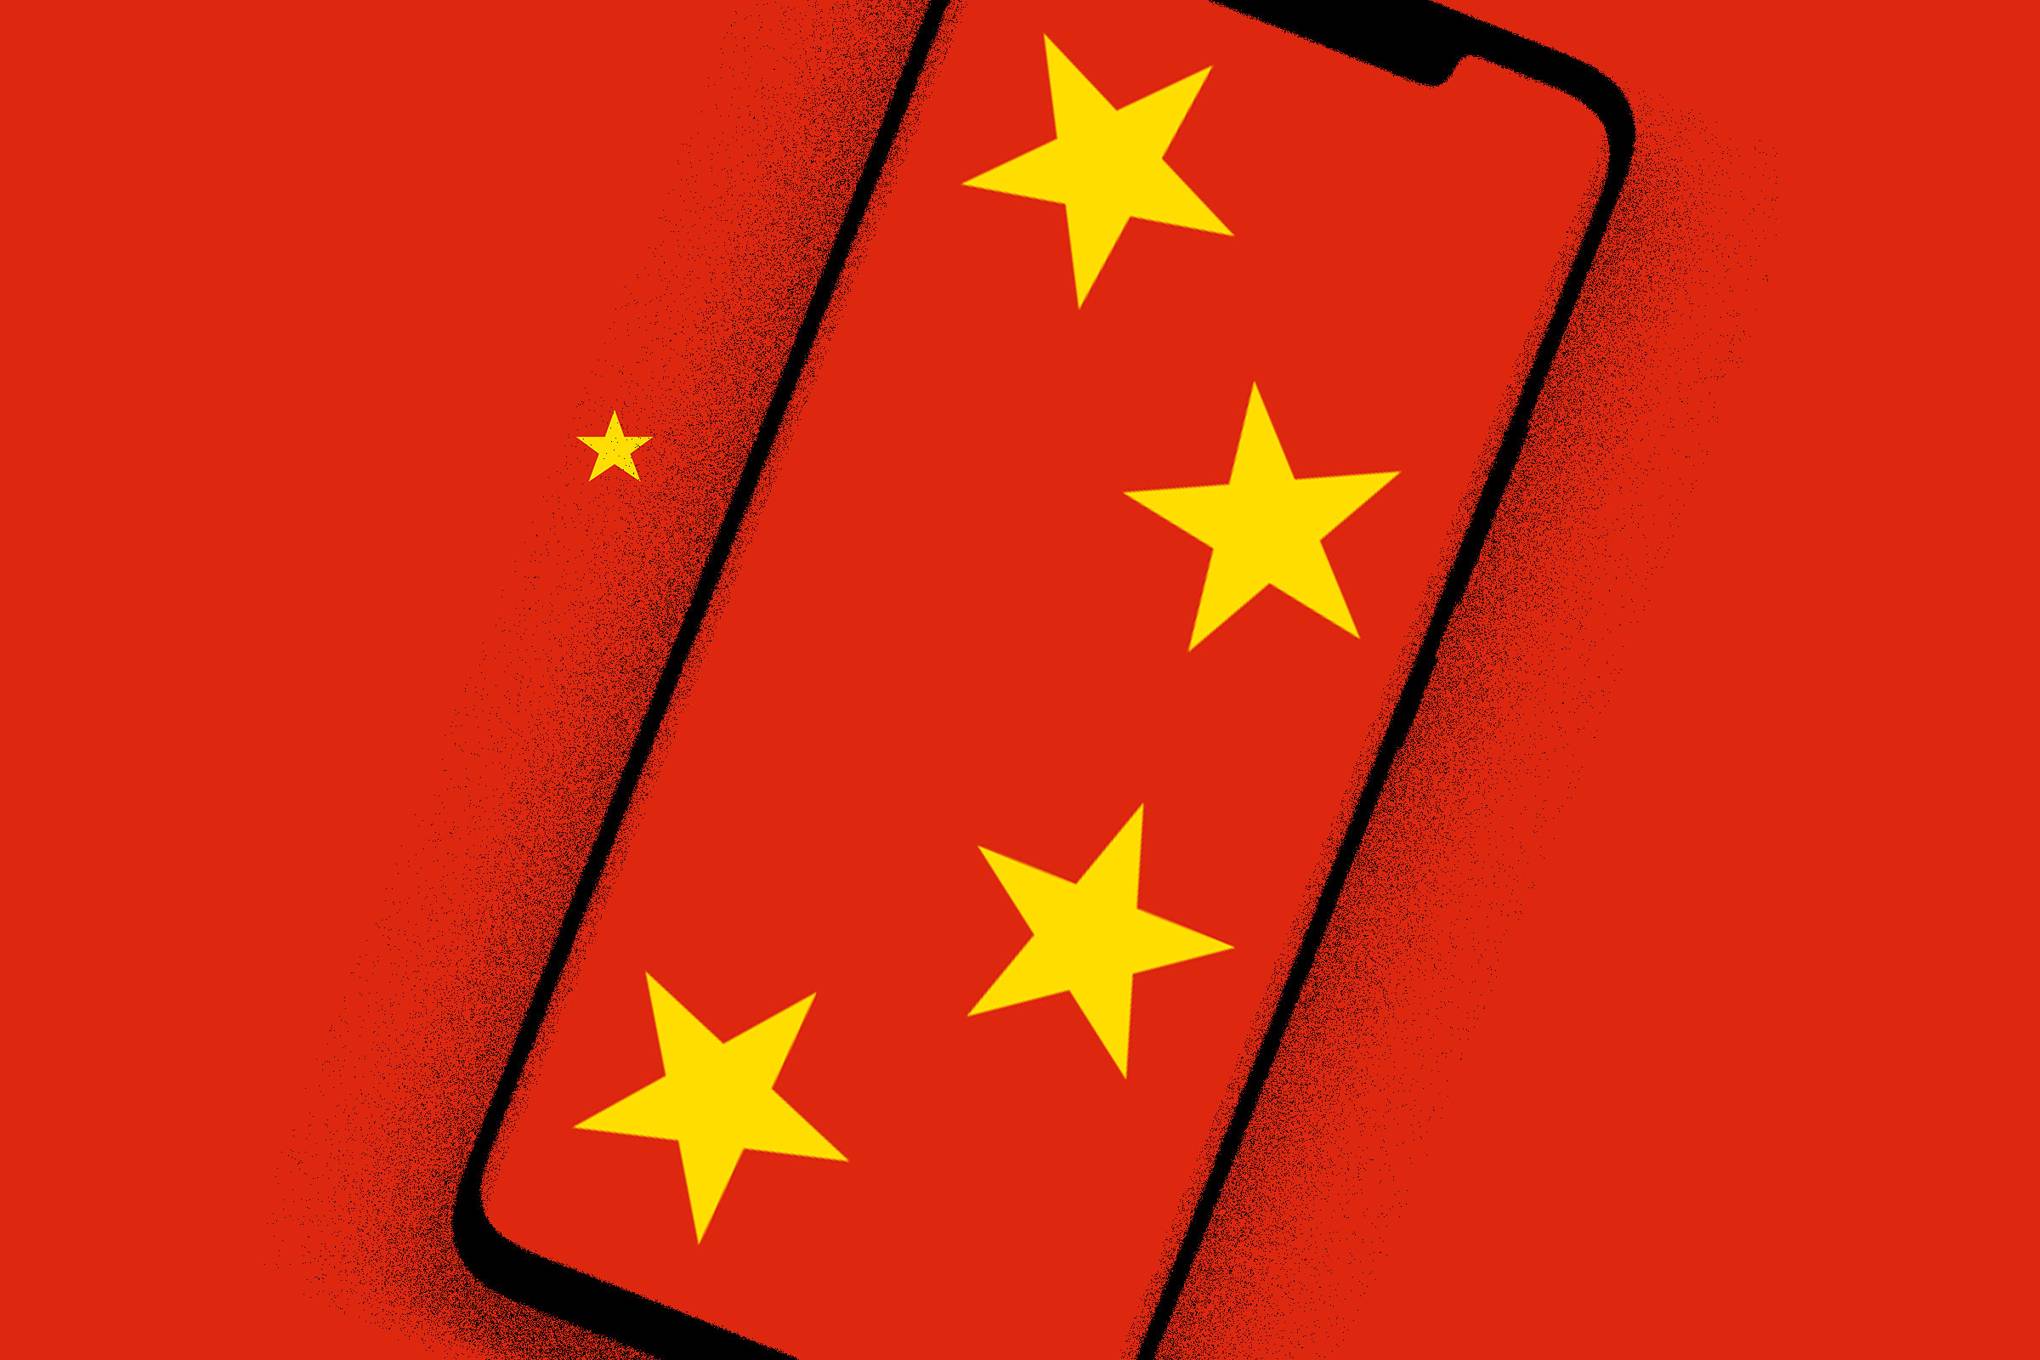 Les États-Unis sont accusés d’avoir piraté le groupe chinois Huawei